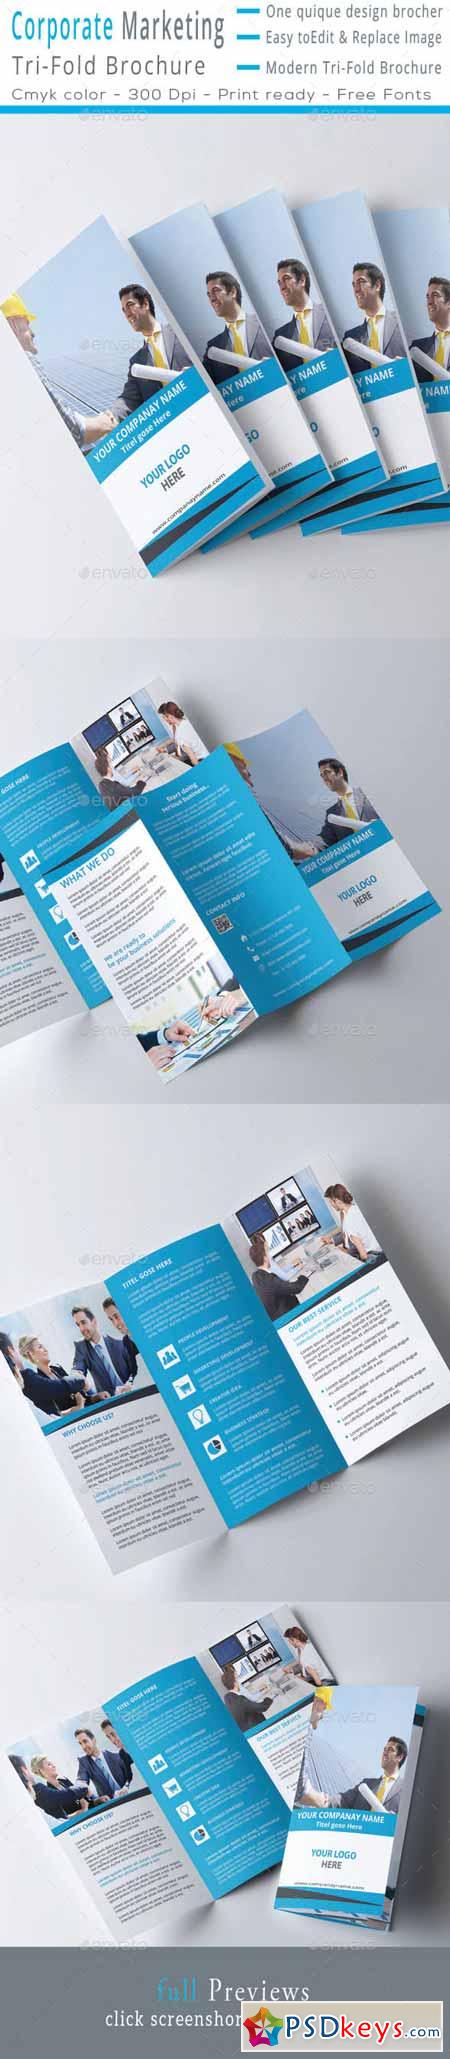 Corporate MarketingTri-Fold Brochure 11778663